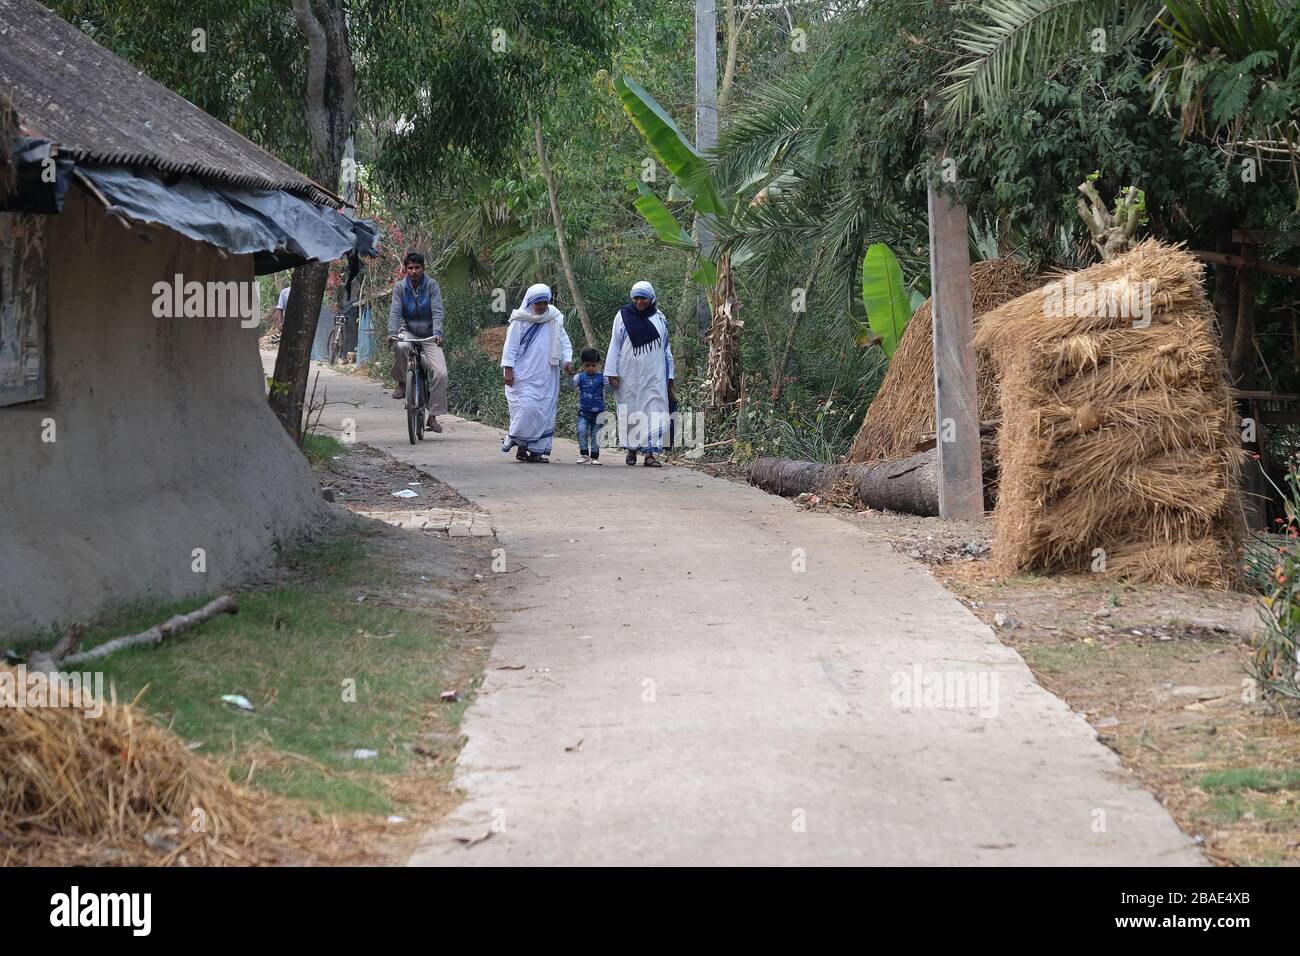 Missionnaires de la Charité - mère Teresa religieuses marchent avec l'enfant à Chunakhali, Bengale Ouest, Inde Banque D'Images